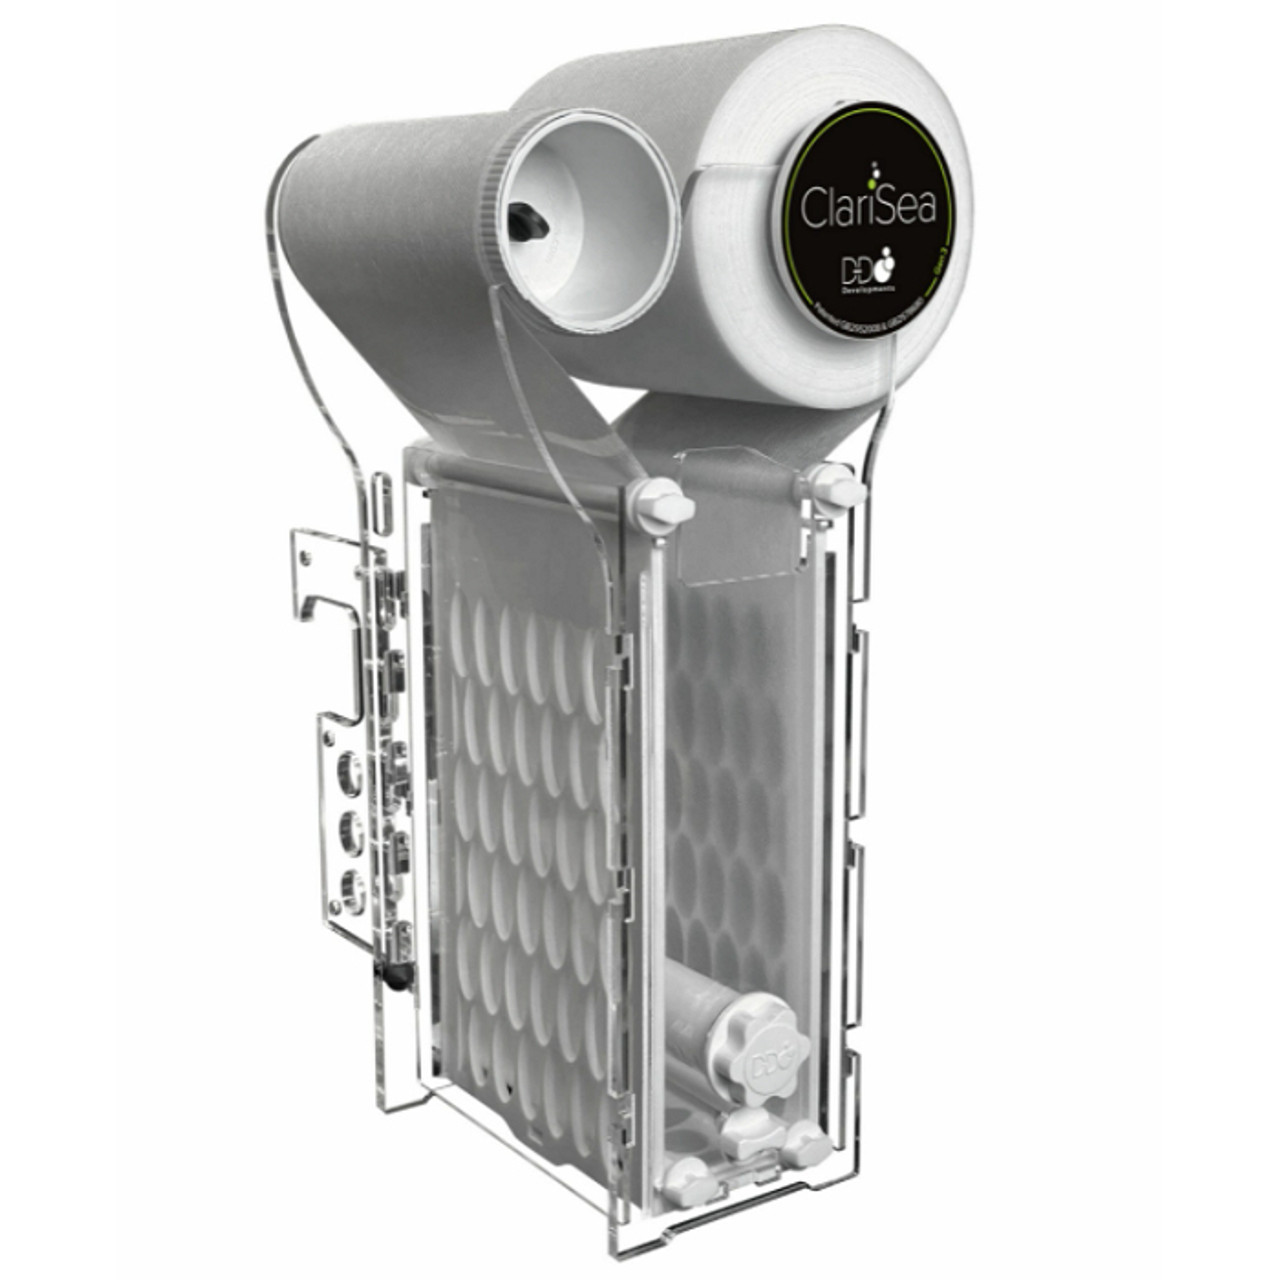 ClariSea SK-5000 Auto Roller Filter, Gen. 3 - AquaCave.com